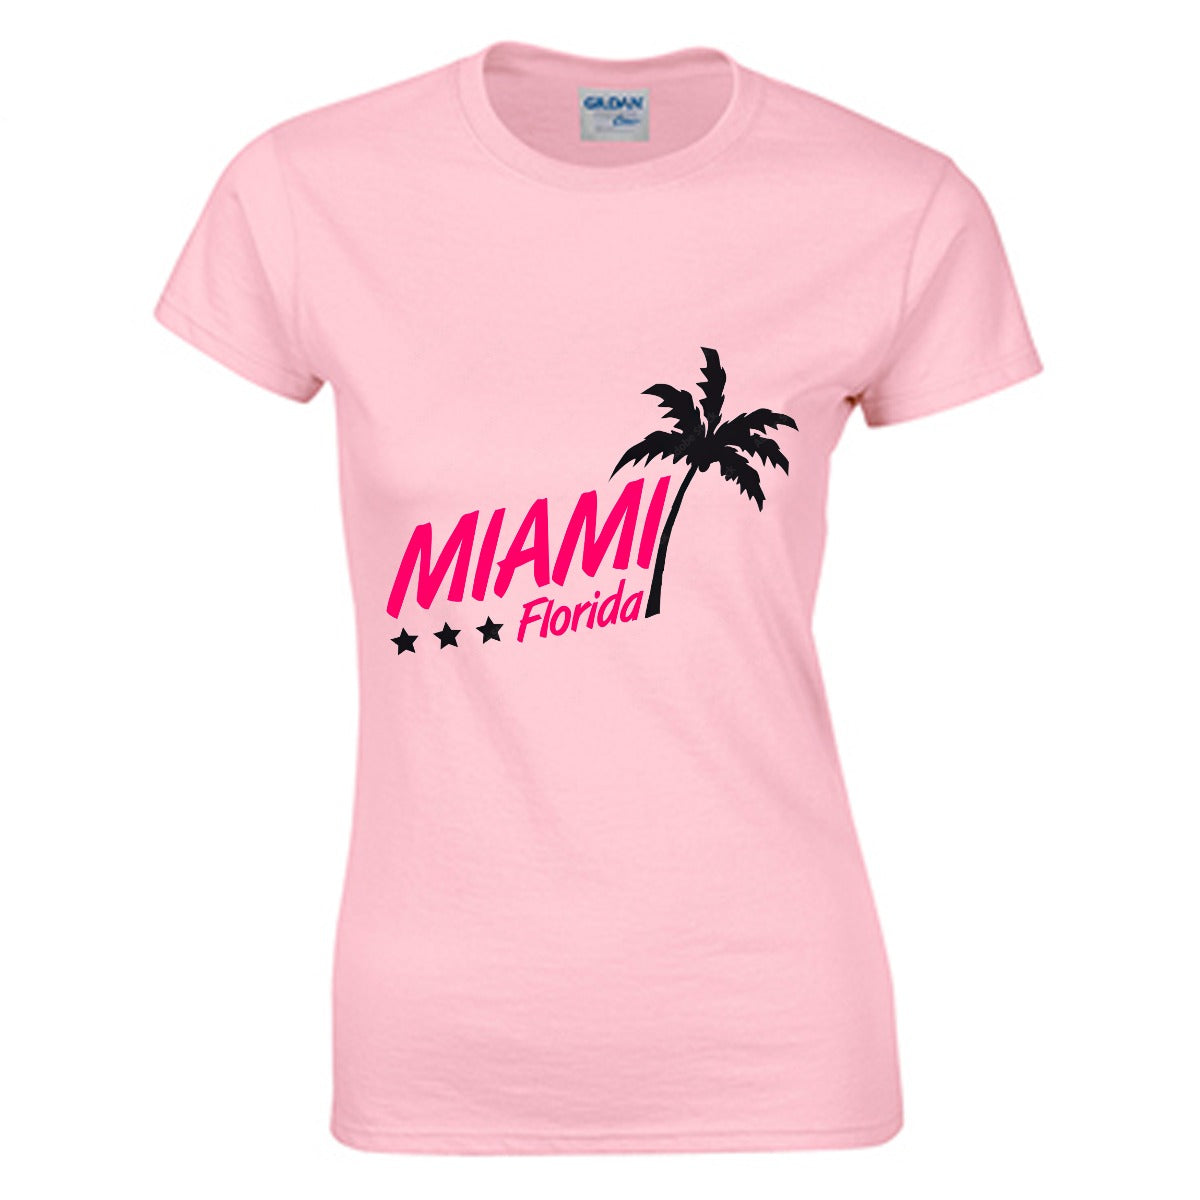 Miami Florida Women's T-shirt (100% Cotton) - T0370